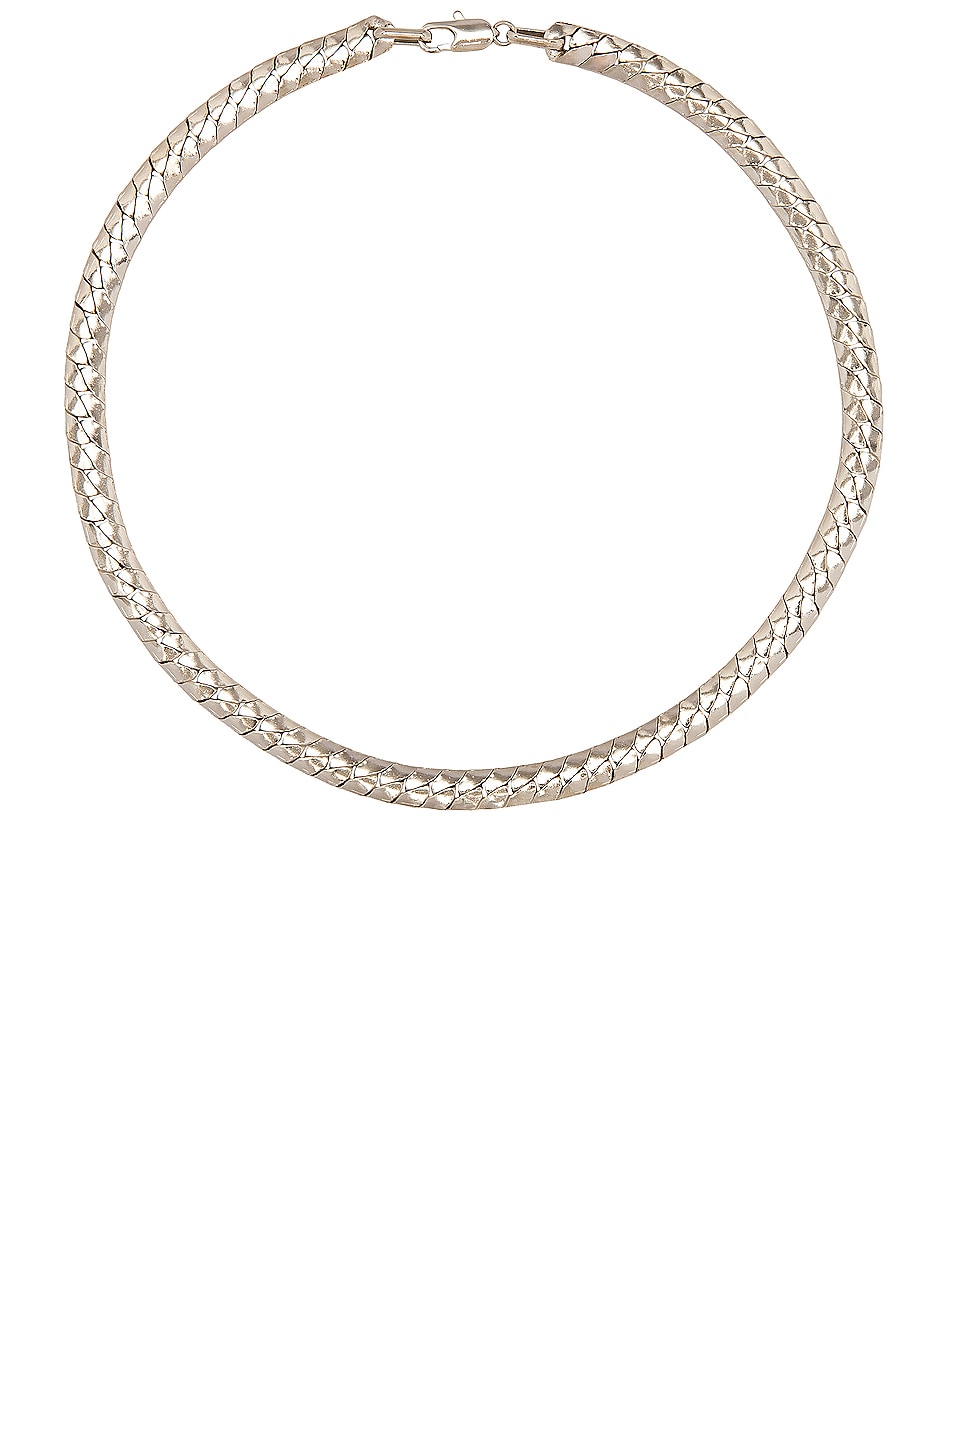 LAURA LOMBARDI Piatta Necklace in Silver | FWRD